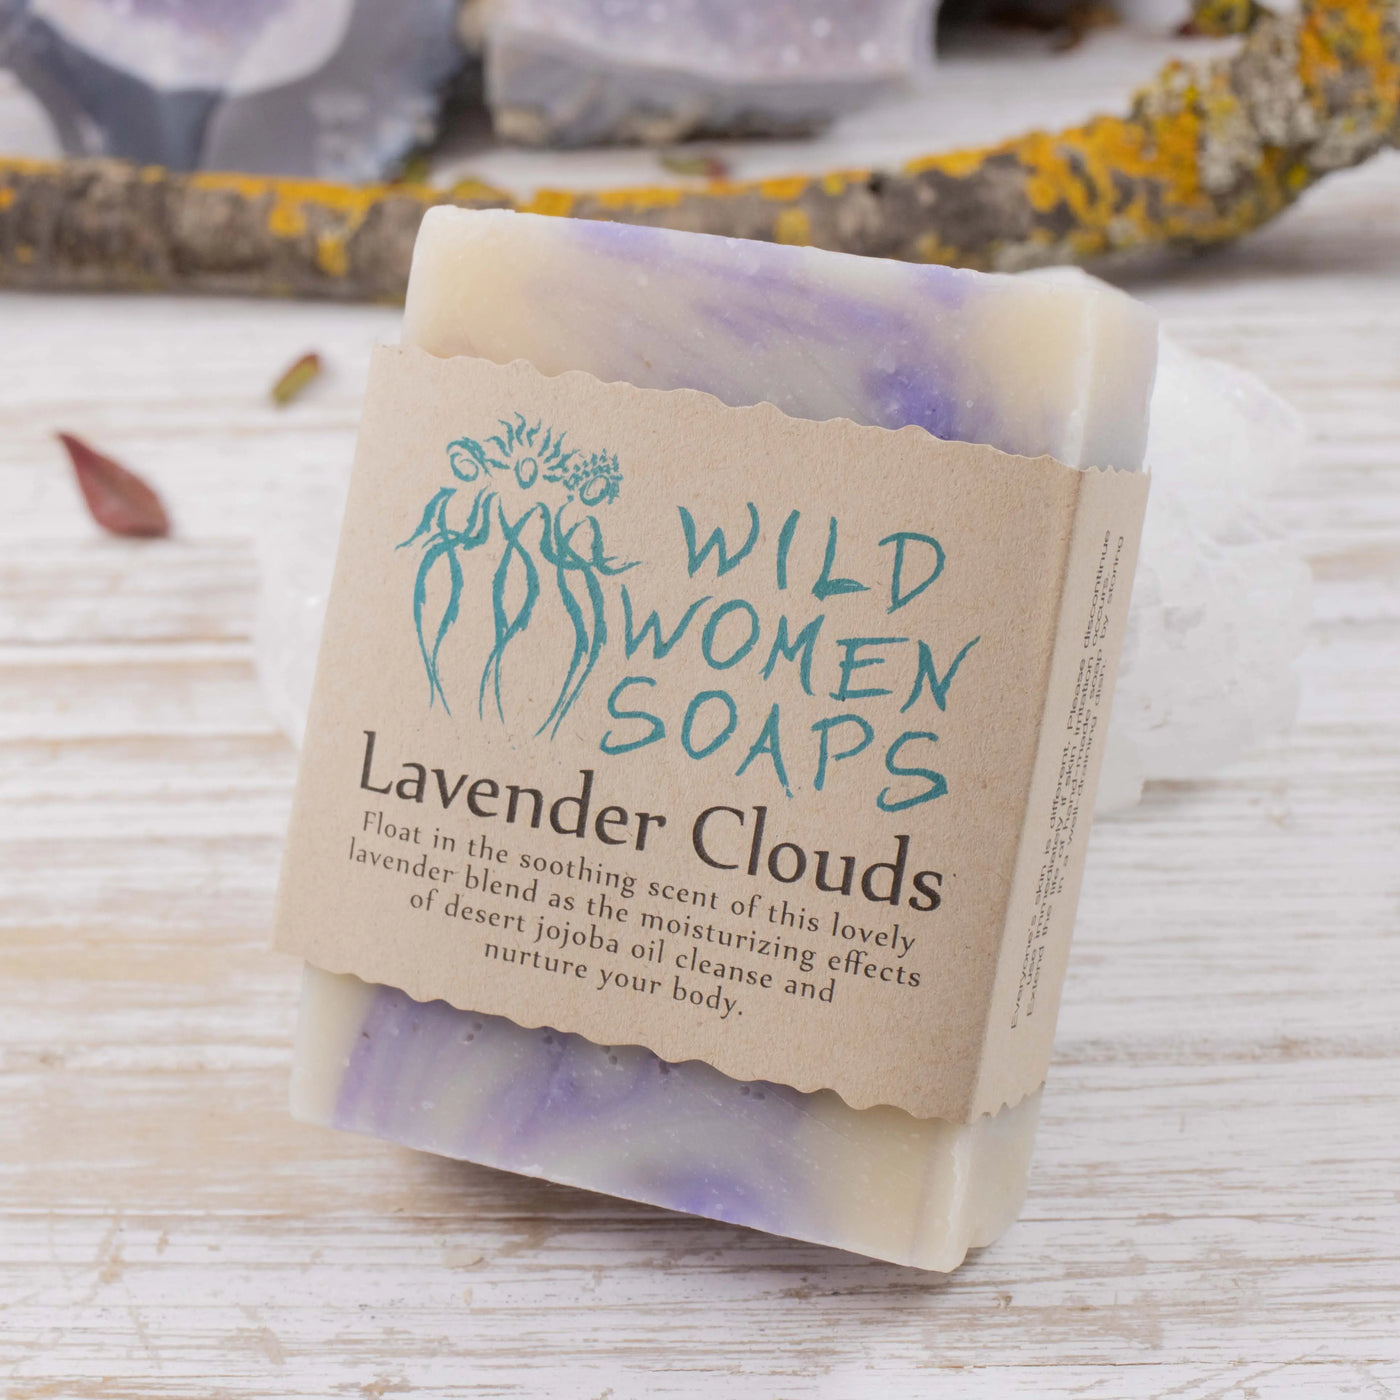 Lavender Clouds Soap